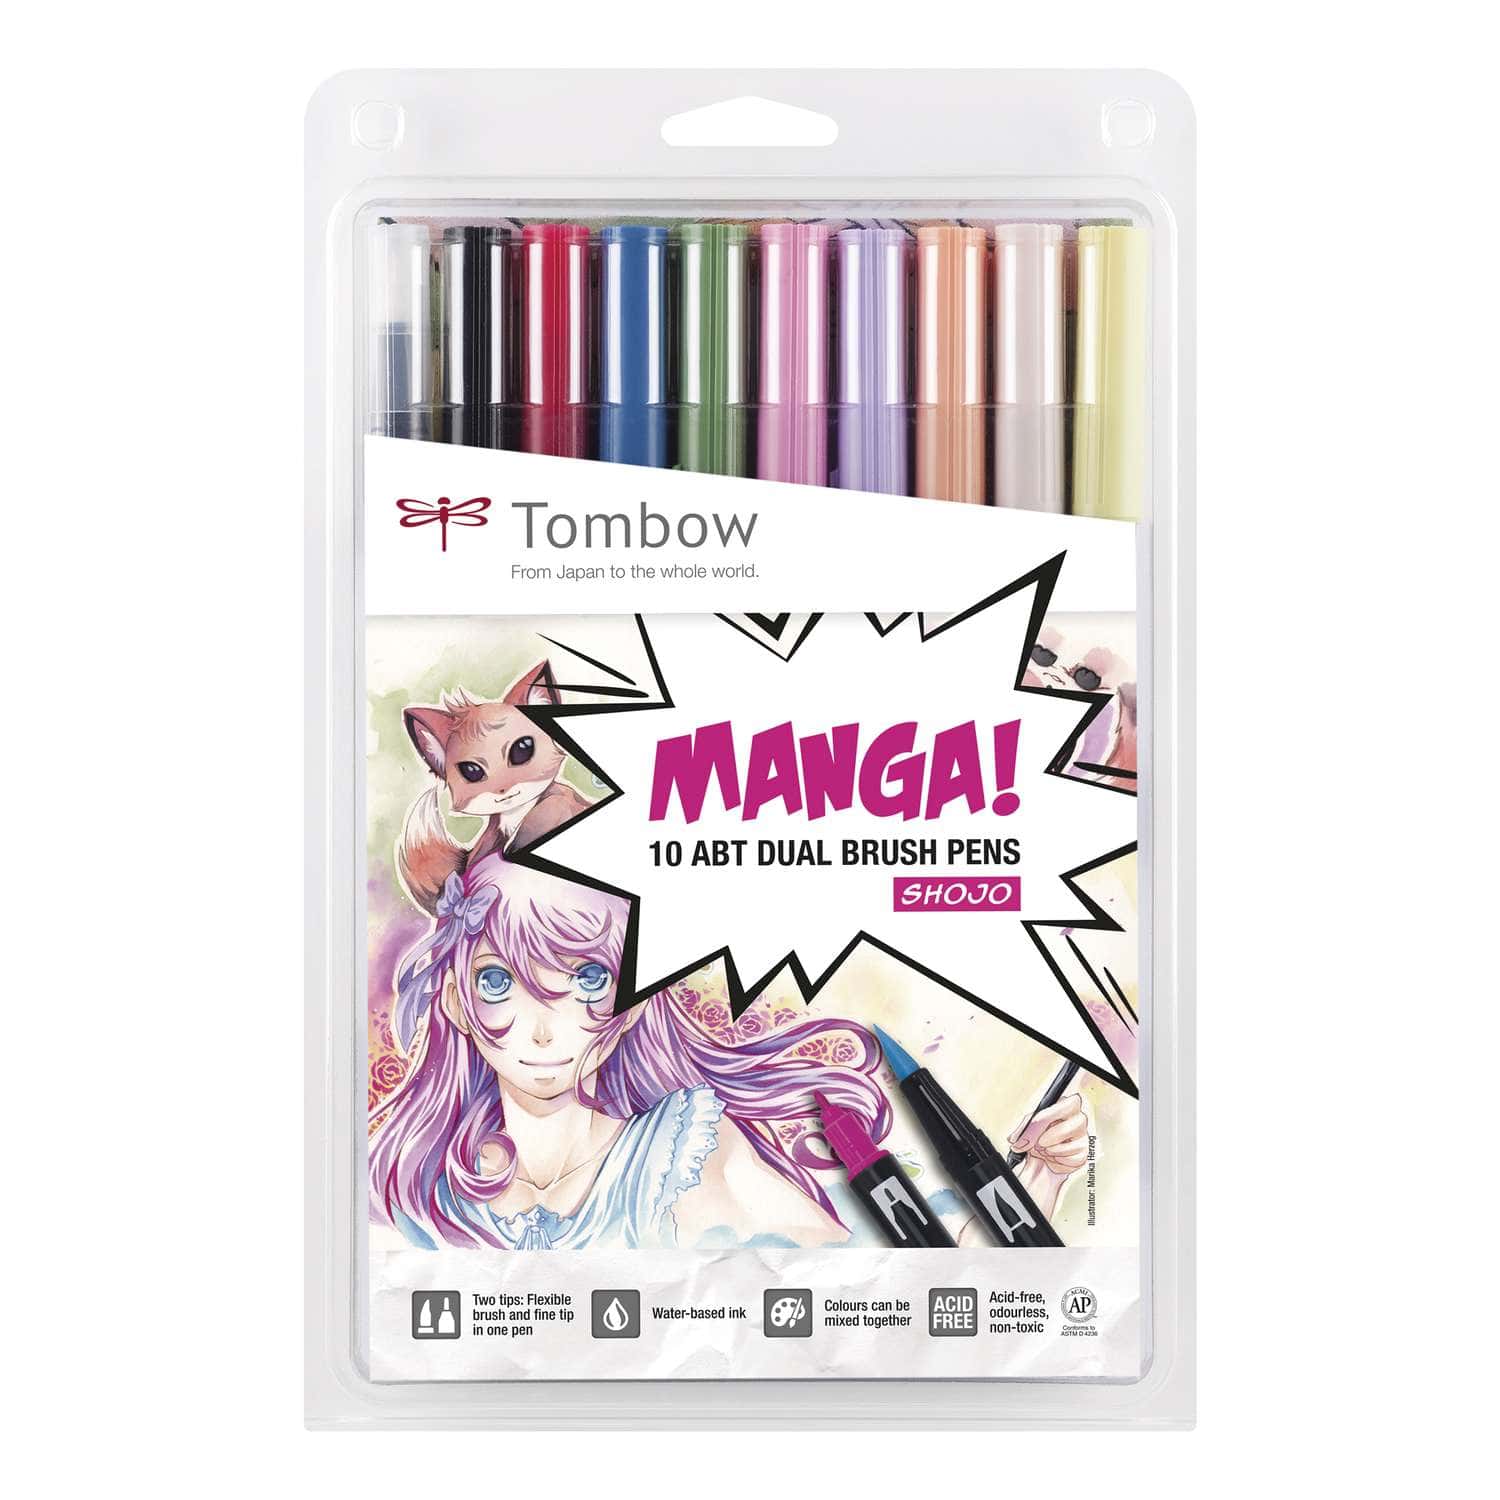 Tombow - Abt Dual Brush Pen, Set Manga